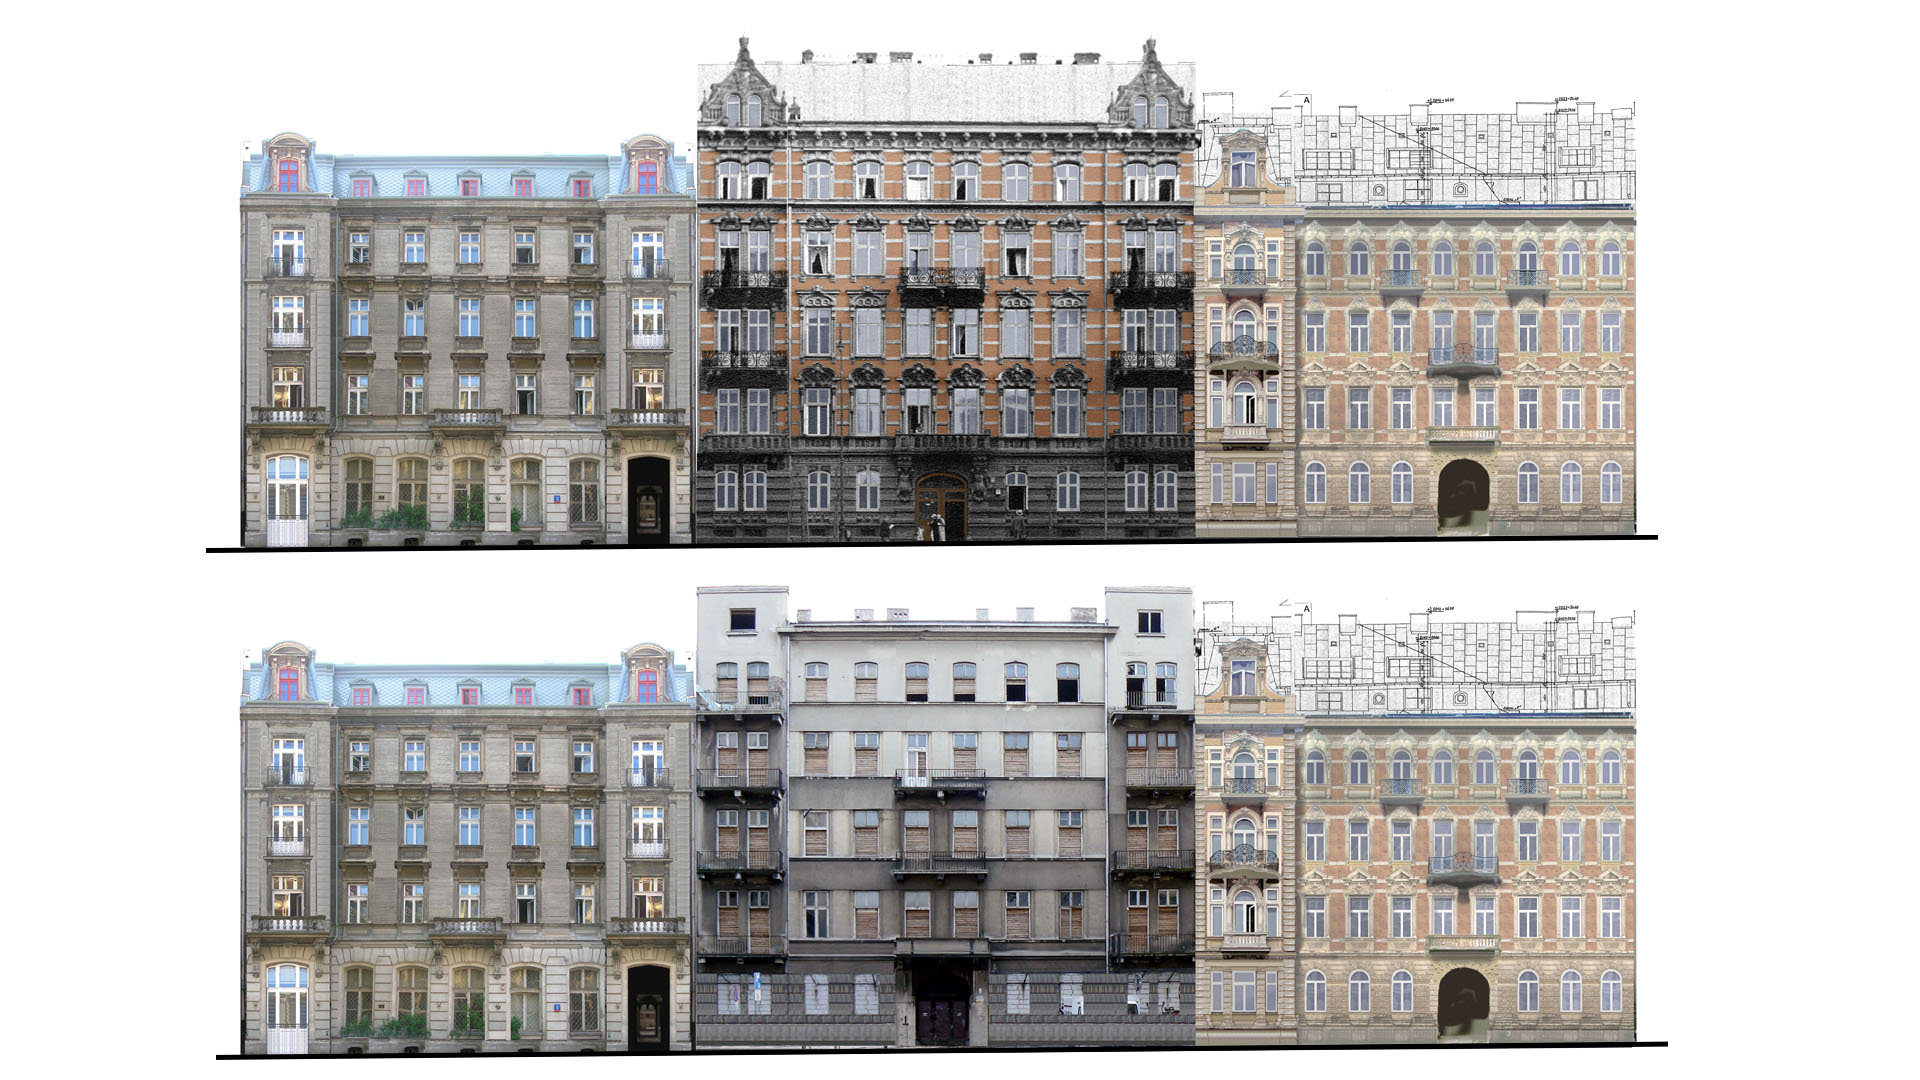 projekt przebudowa modernizacja nadbudowa adaptacja Proart Anna Rostkowska odtworzenie fasady fasada eklektyzm kamienica